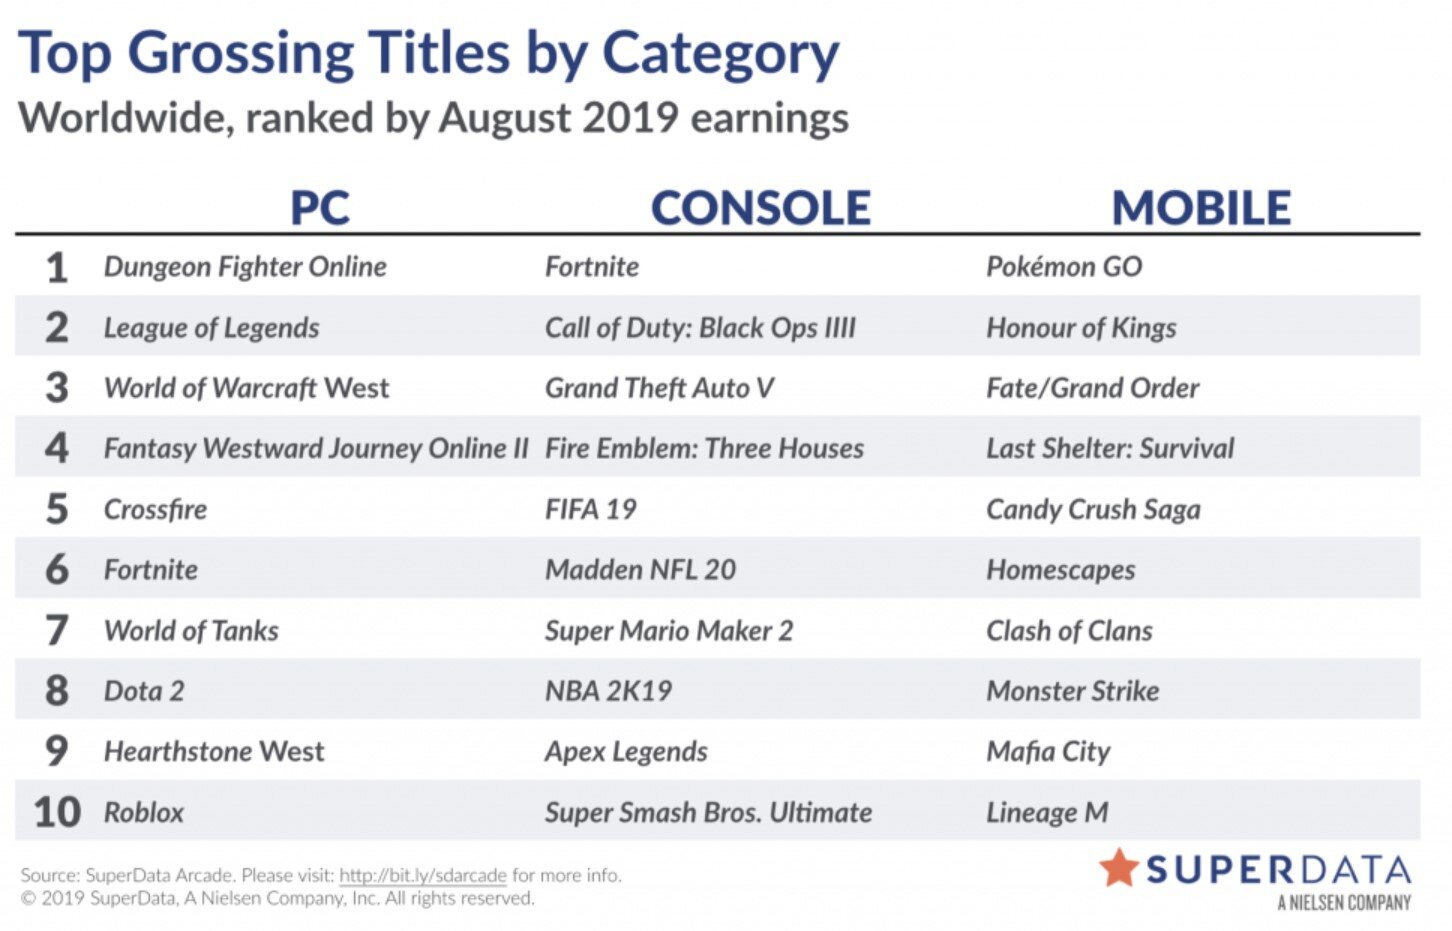 Daftar video game terlaris di Agustus 2019